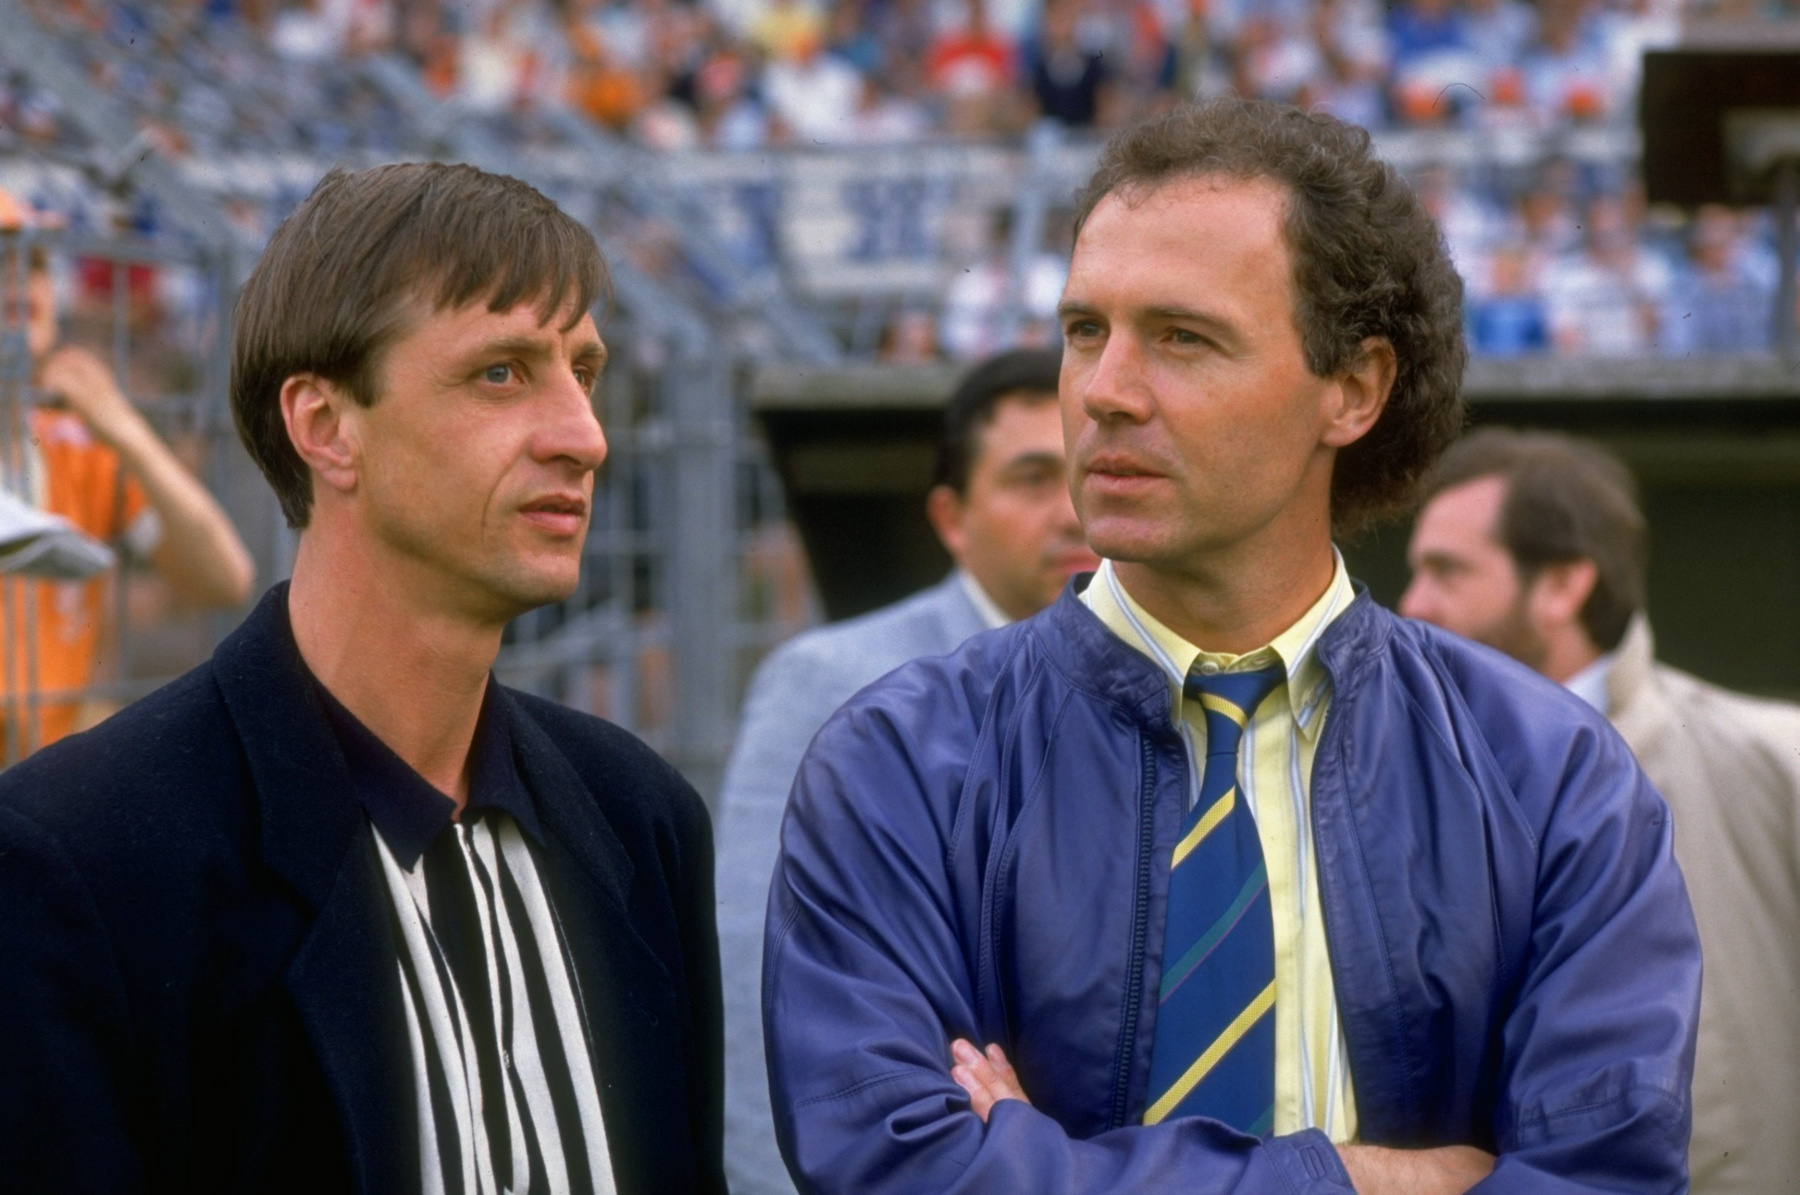 Lothar Matthäus és Franz Beckenbauer labdarúgó-világbajnokok 2020. október 10-én